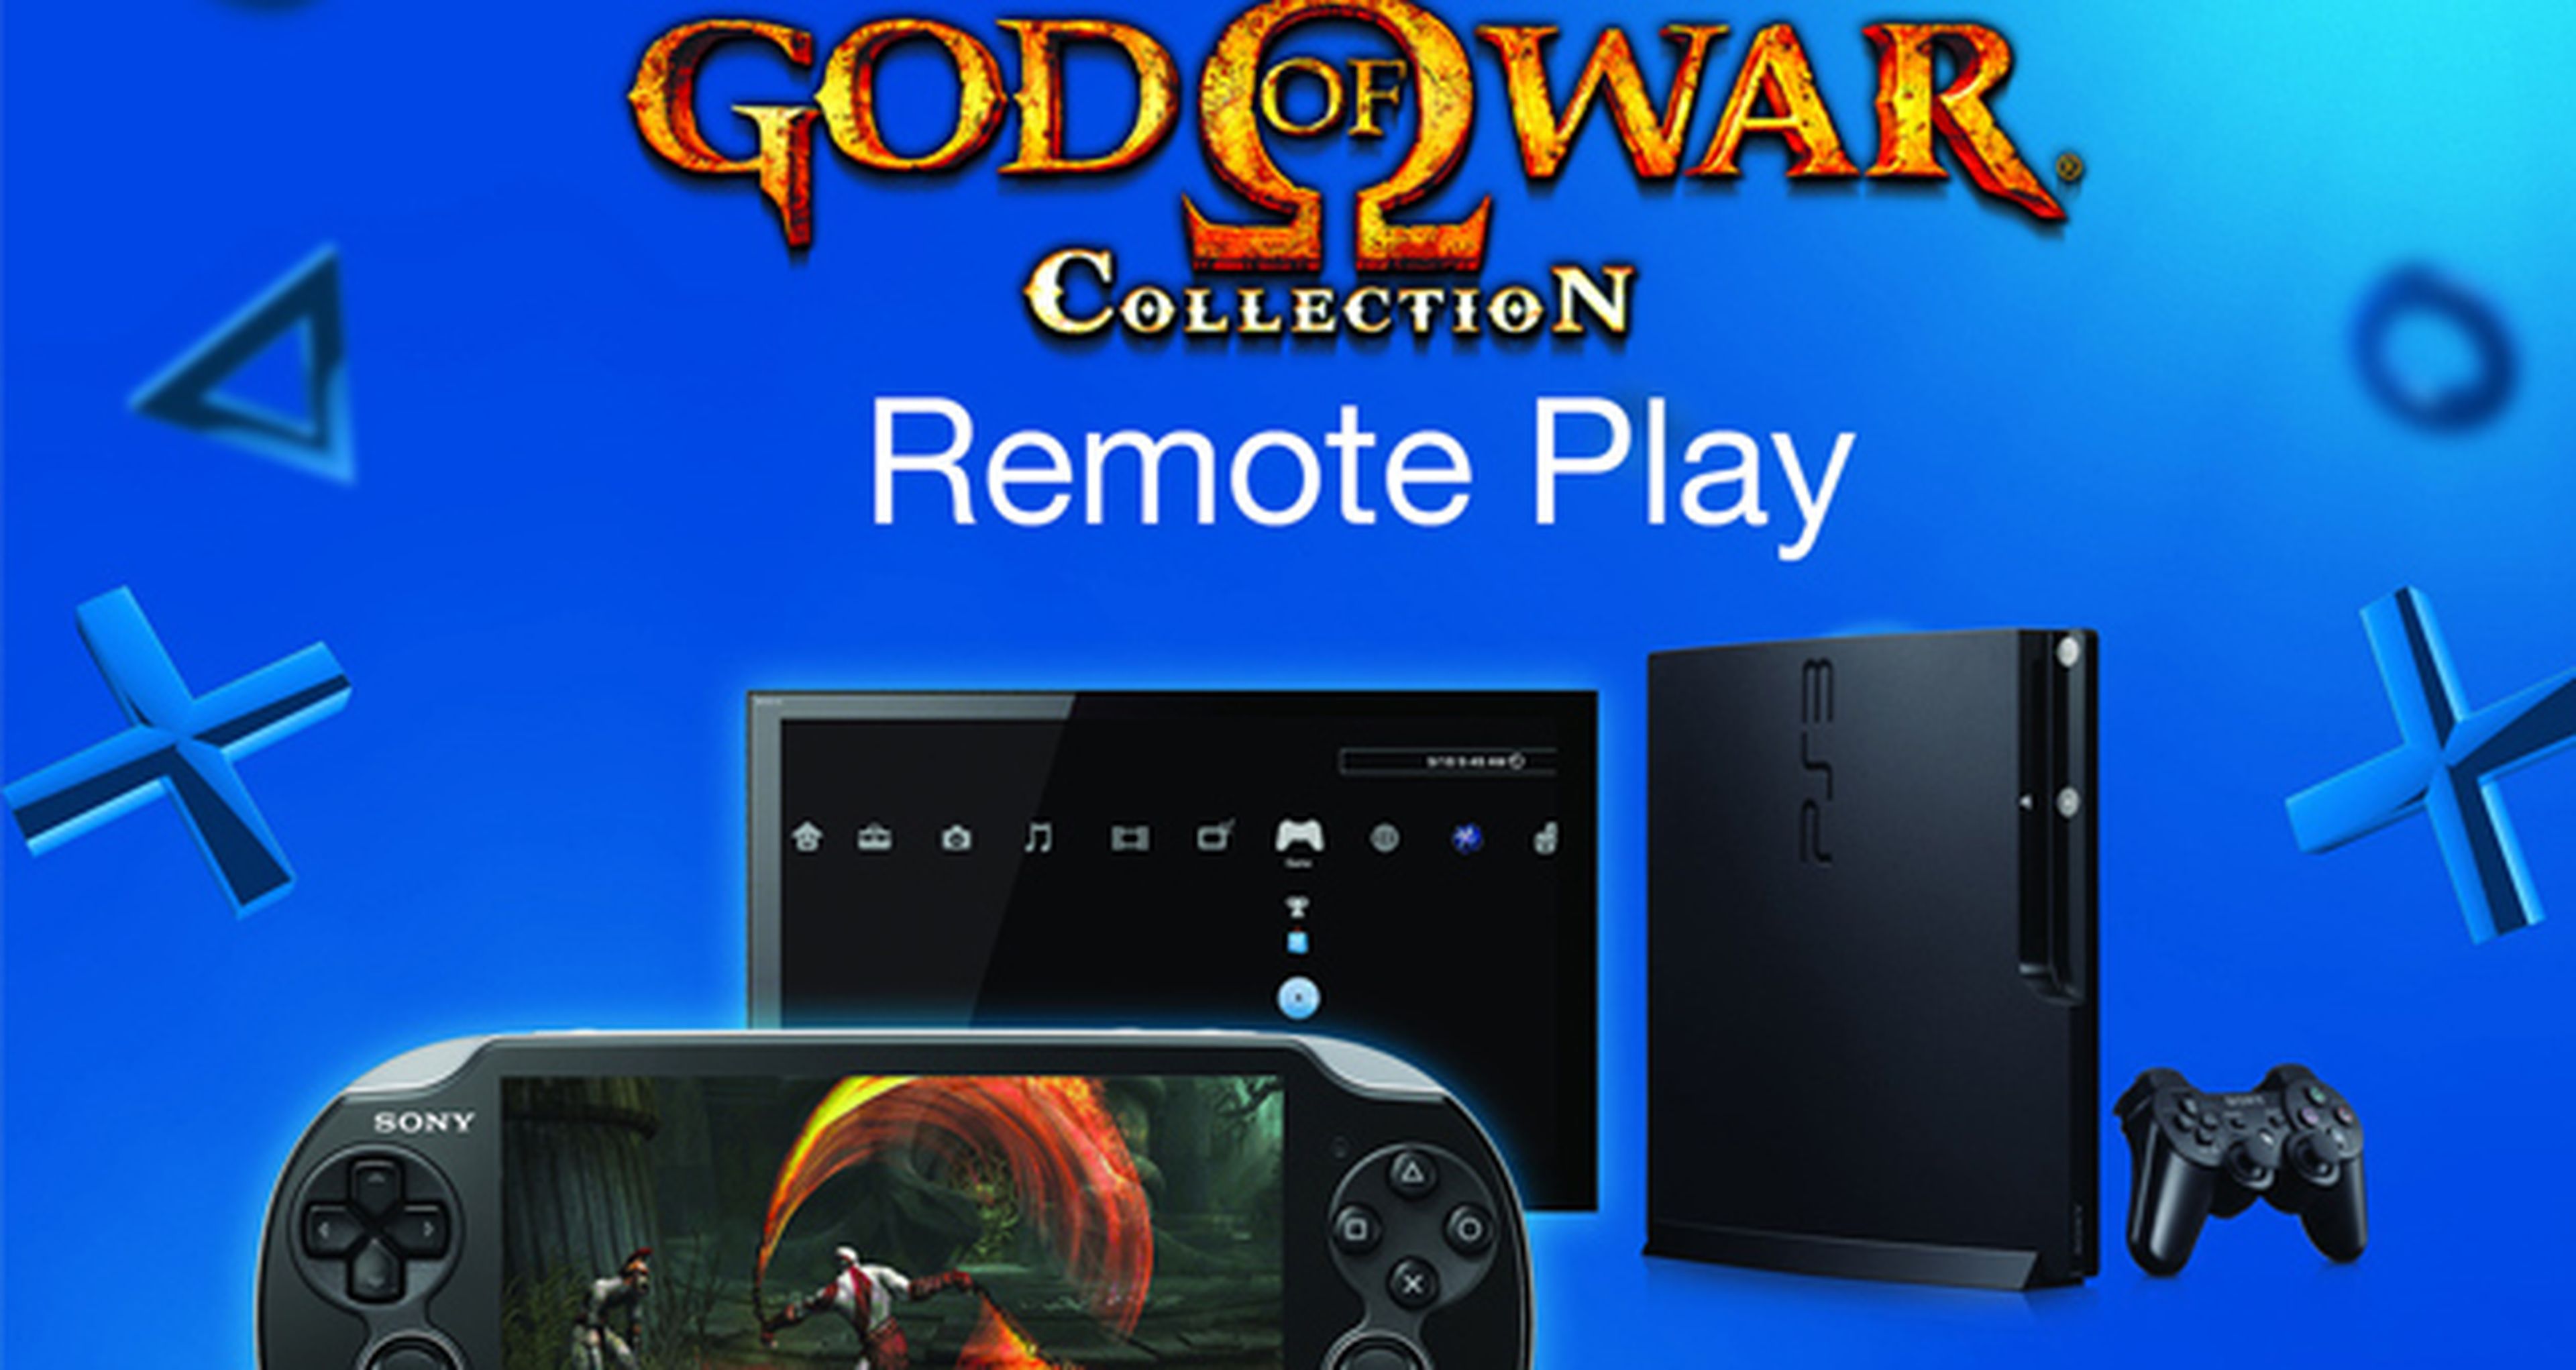 PS Vita lanza Remote Play para God of War